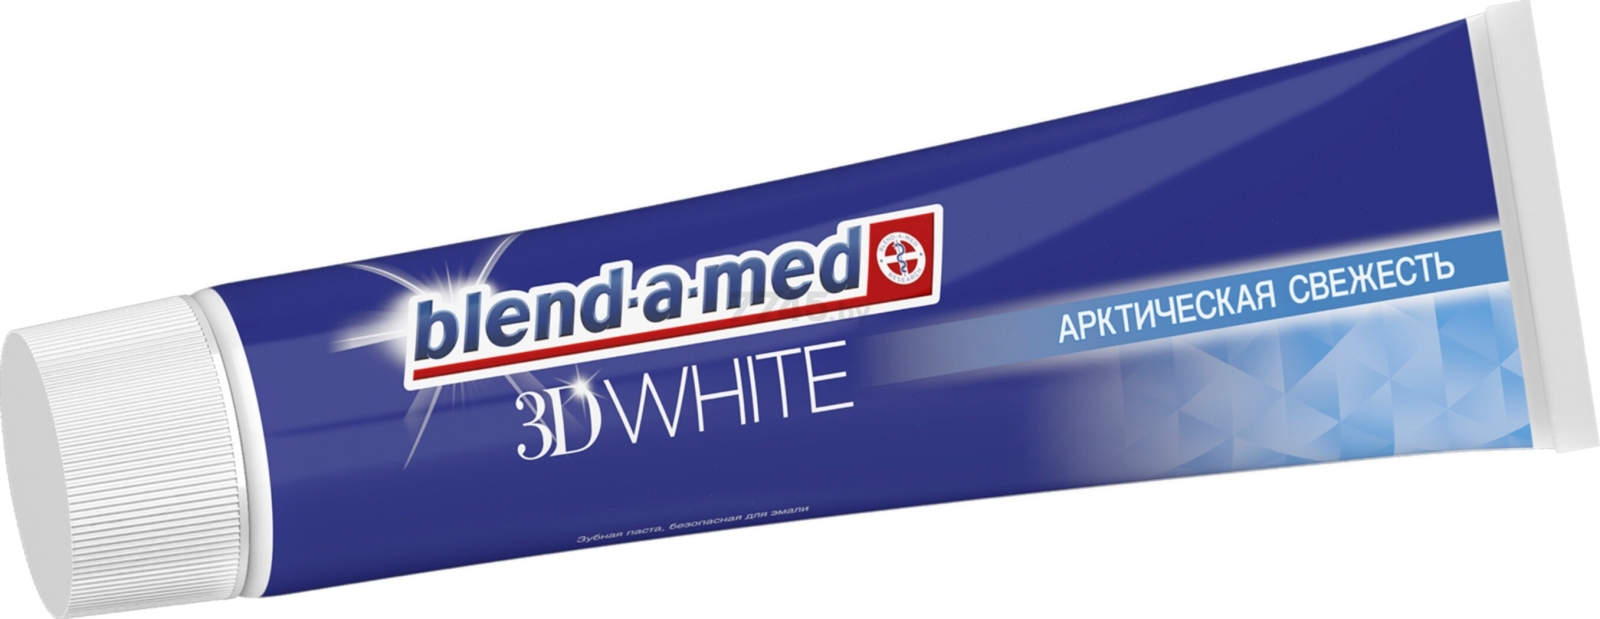 Зубная паста BLEND-A-MED 3D White Арктическая свежесть 125 мл (5410076475834) - Фото 3